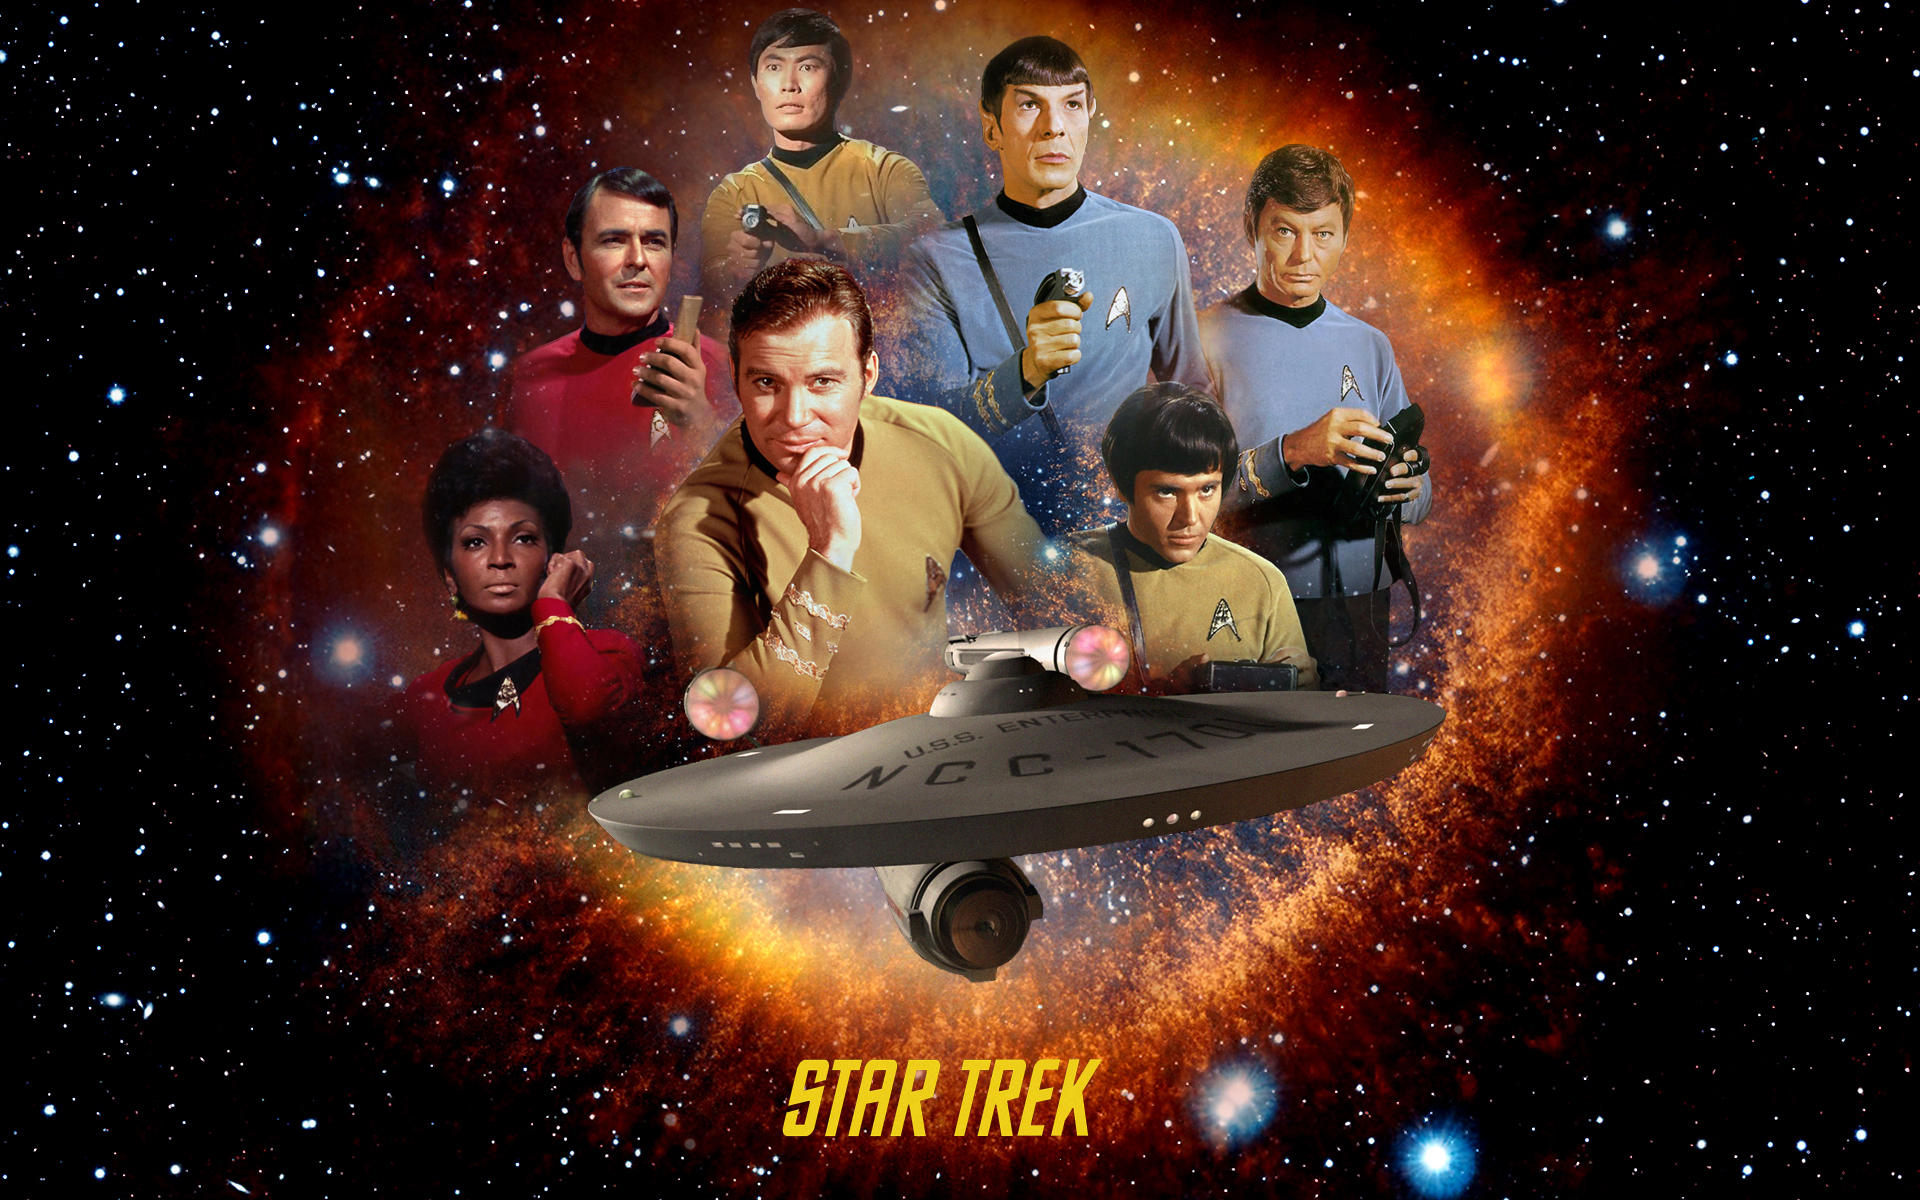 Star Trek: The Original Series #10